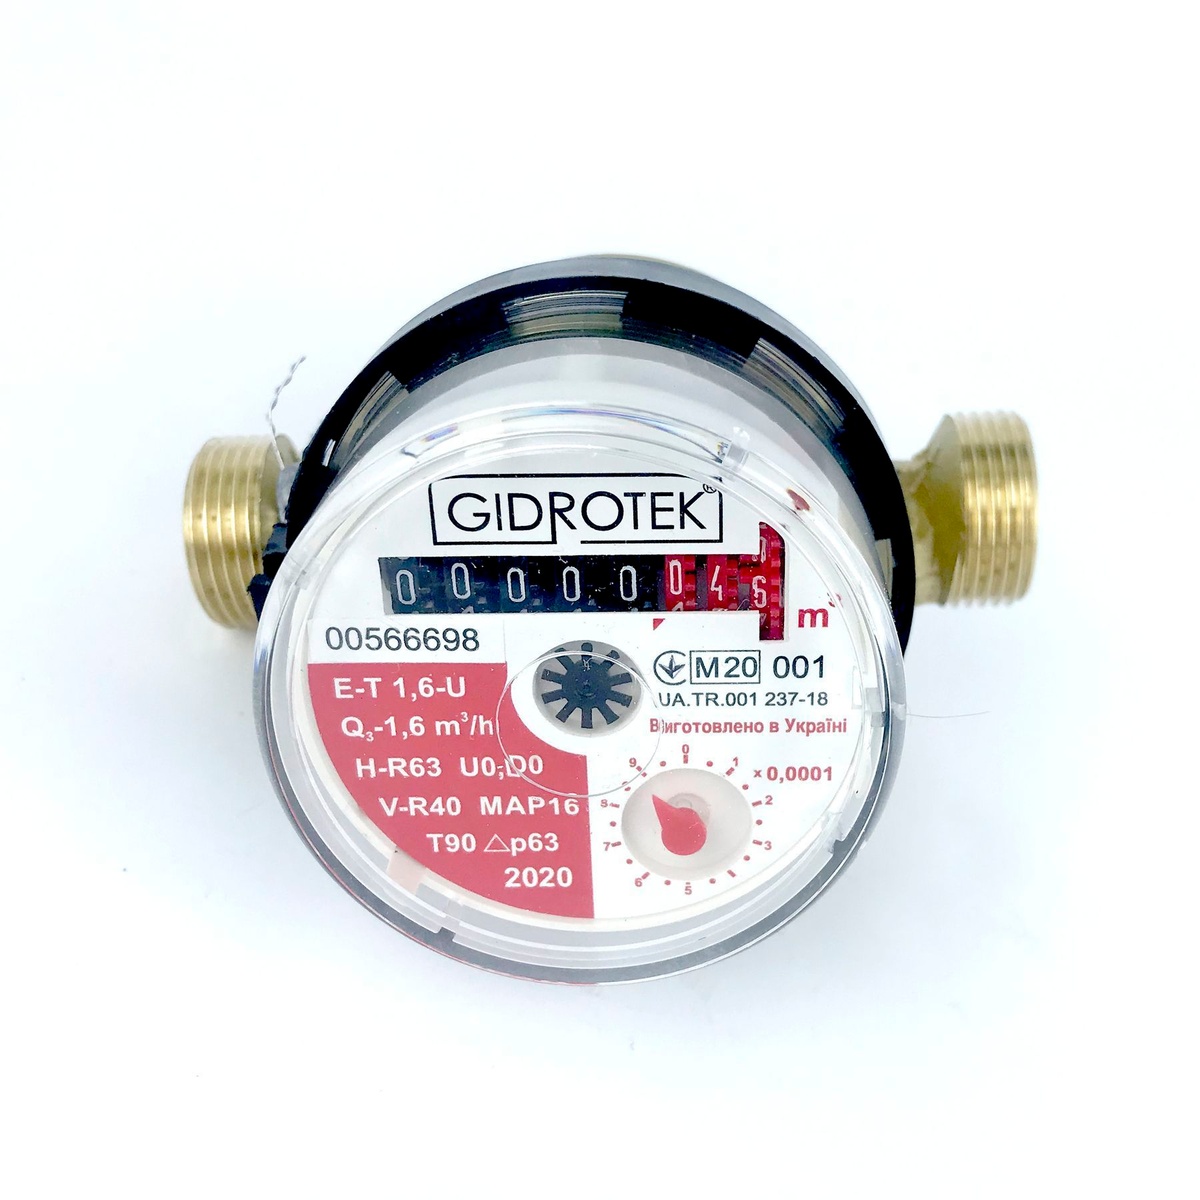 Лічильник для гарячої води GIDROTEK E-T 1.6U DN15 1/2" з штуцерами 000003371